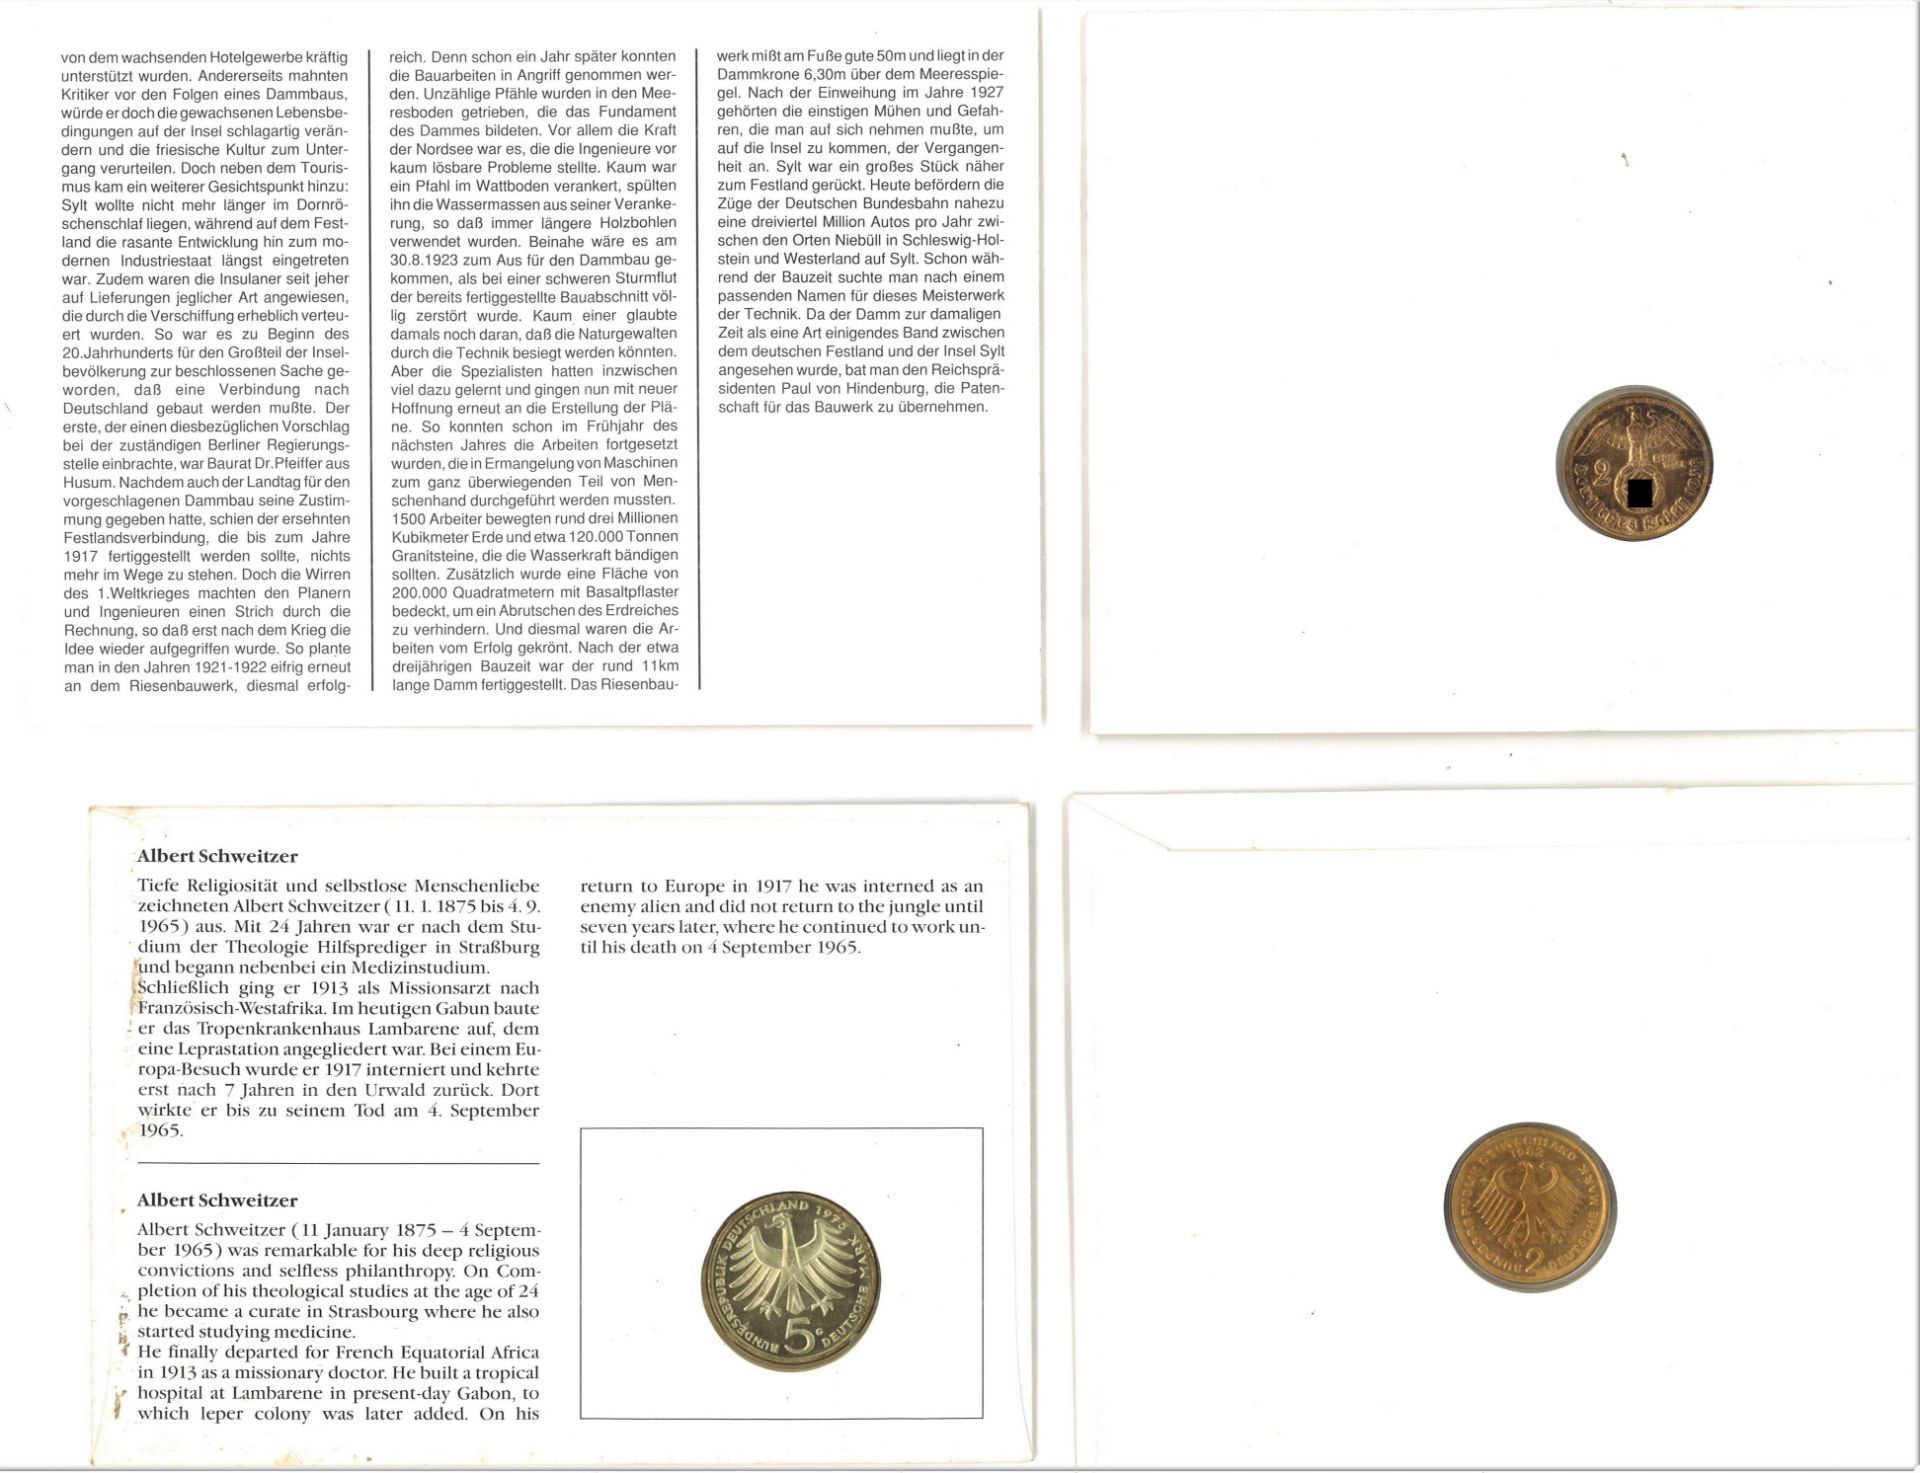 3 Münzbriefe Deutschland, dabei 2 Mark Konrad Adenauer, 5 Mark Albert Schweitzer und 2 Mark - Bild 2 aus 2